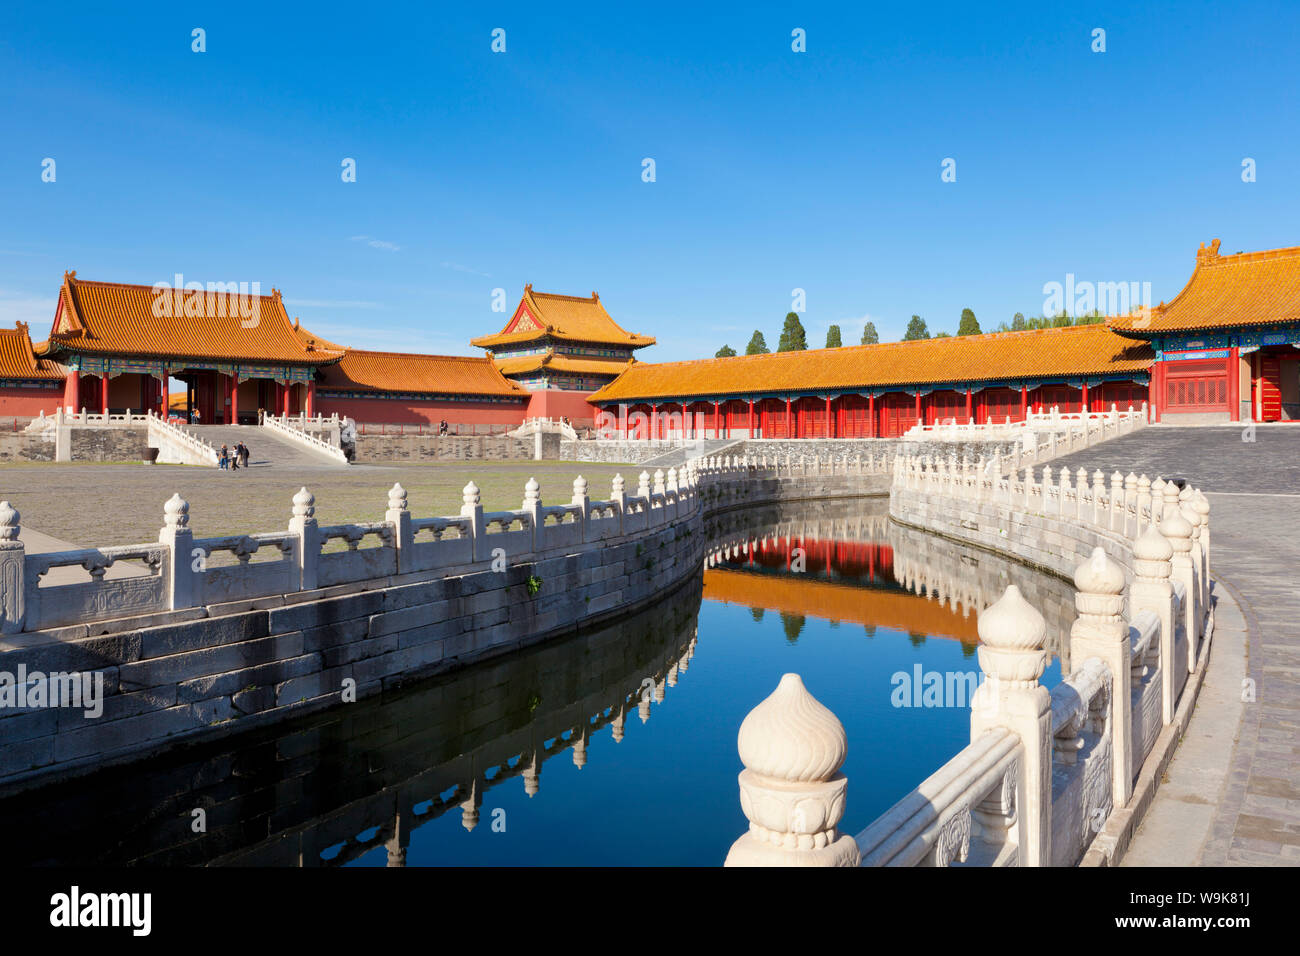 Inneren goldenen Wasser-Fluss fließt durch das äußere Gericht, Verbotene Stadt Komplex, Peking, China, Asien Stockfoto